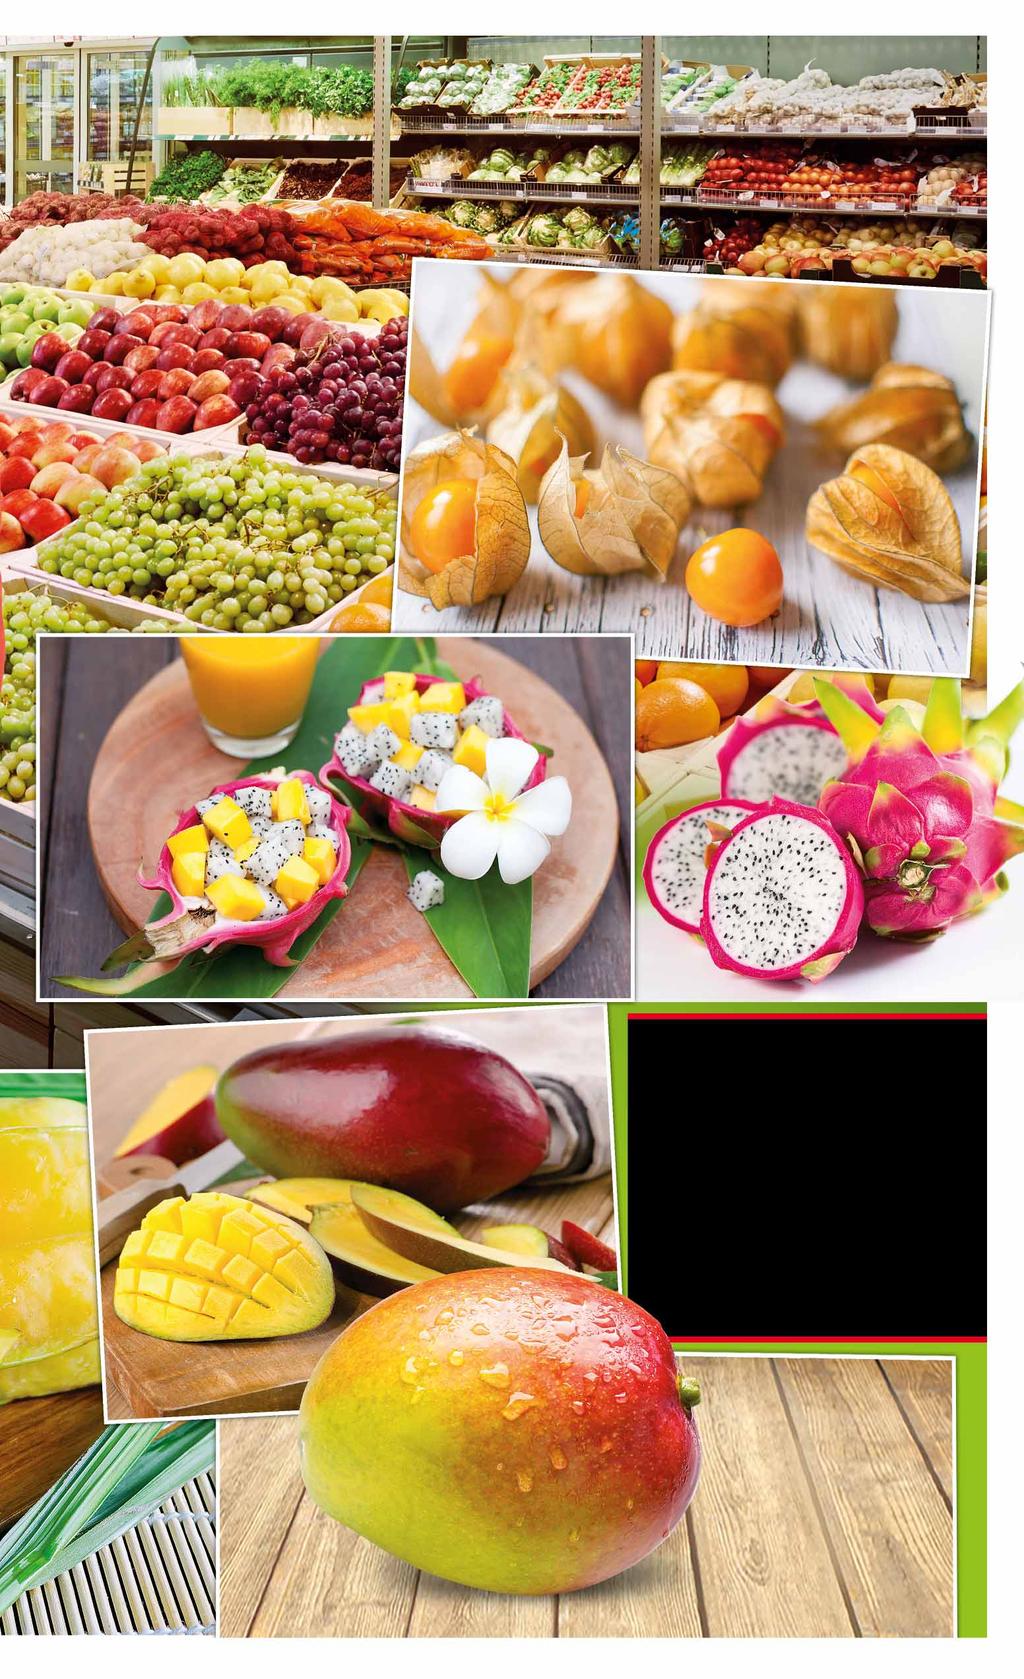 100 owoców i warzyw egzotycznych 15 produktów 15 rodzajów BIO pomidorów PHYSALIS KOLUMBIA kraj pochodzenia: Kolumbia pakowany po 100 g 61435962 2 77 1 opak. z VAT 2.